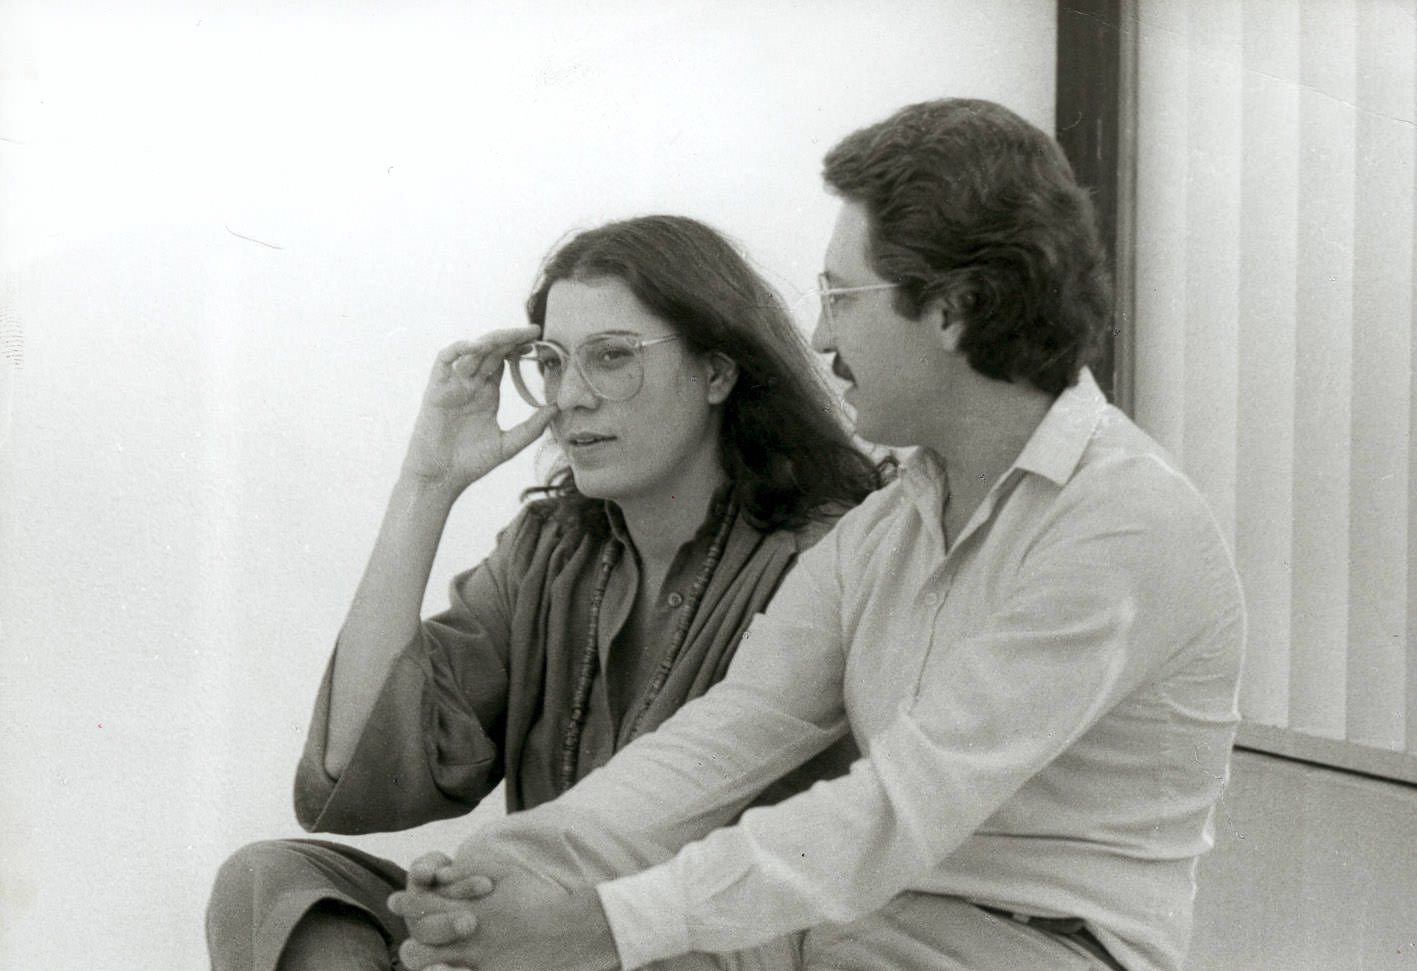 Η Μαρία Φαραντούρη και ο Ζυλφύ Λιβανελί στο Ηρώδειο στις 7 Σεπτεμβρίου